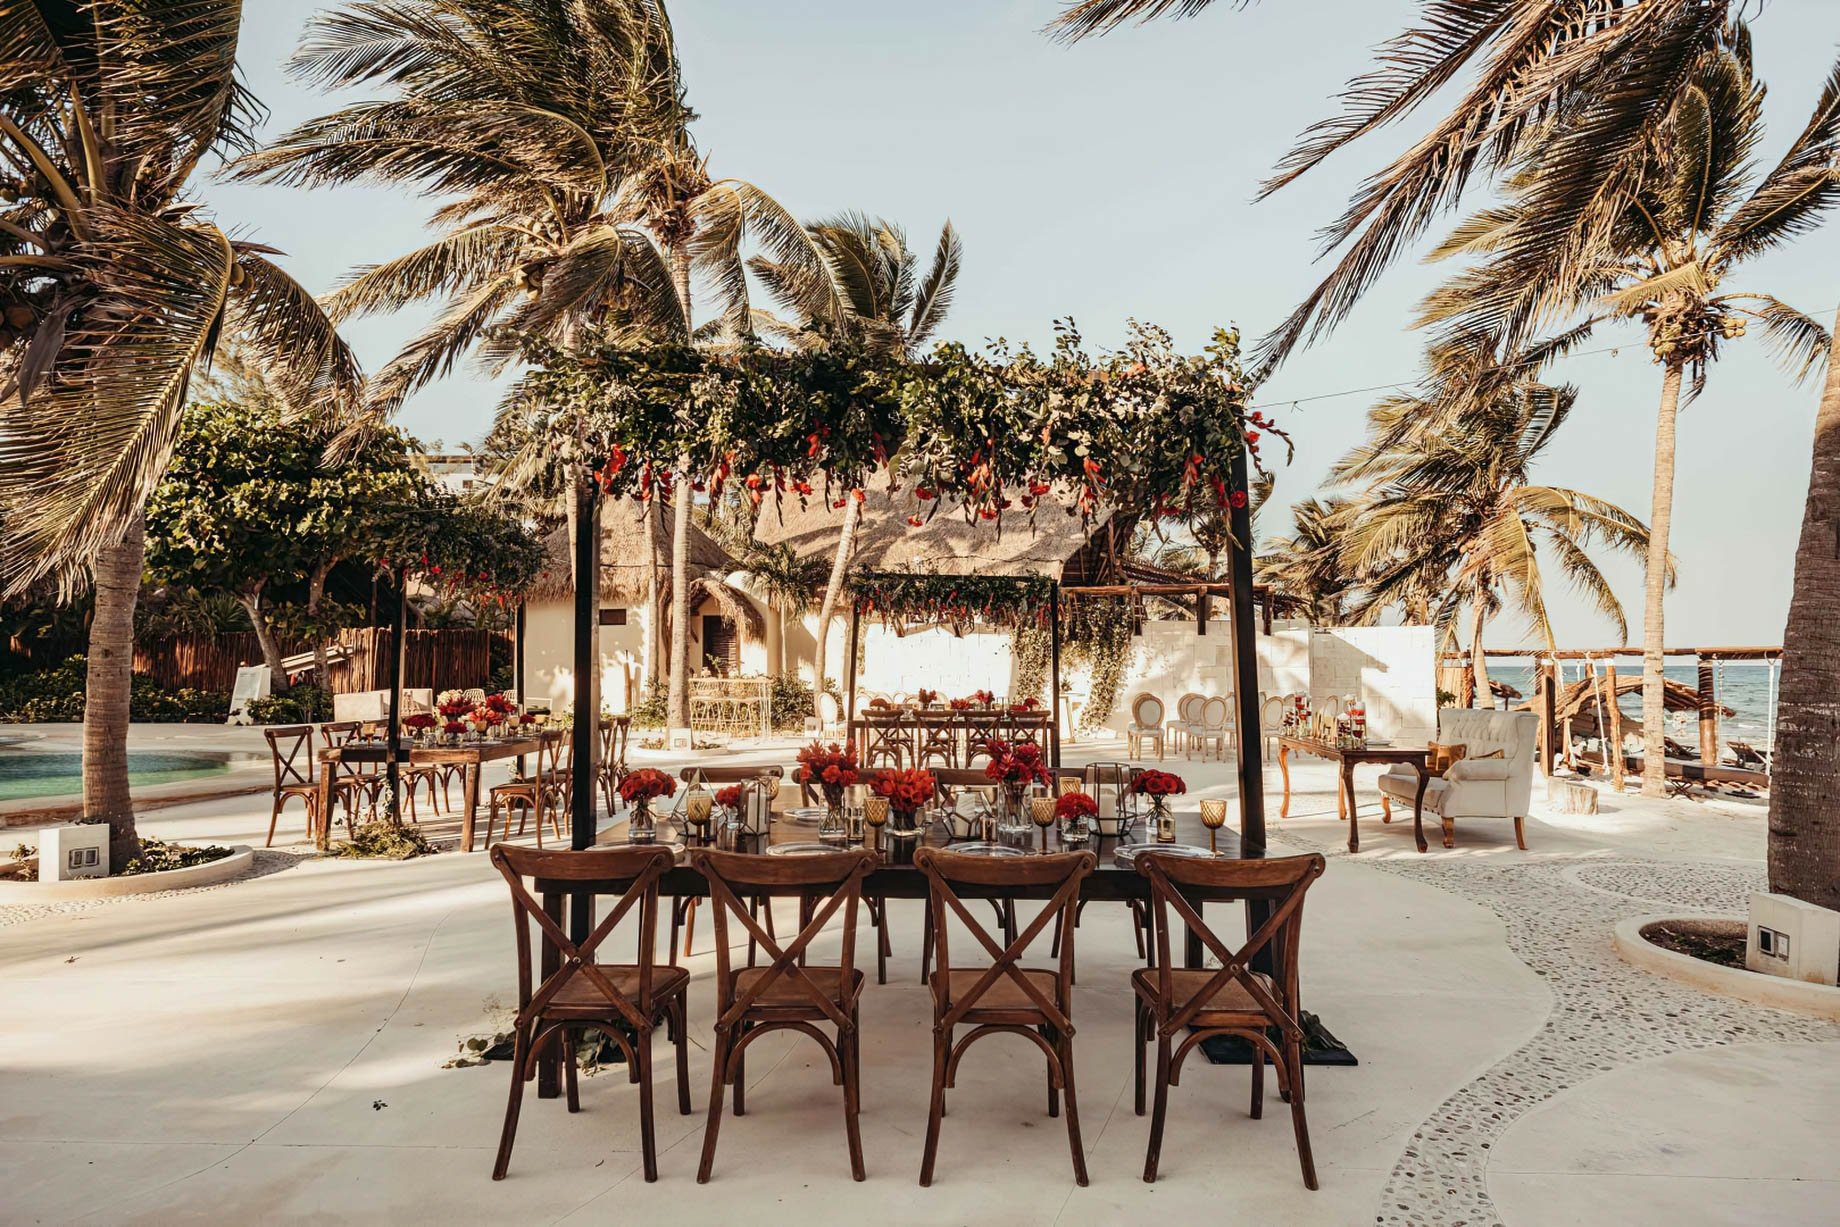 Viceroy Riviera Maya Resort - Playa del Carmen, Mexico - Outdoor Wedding Ceremony